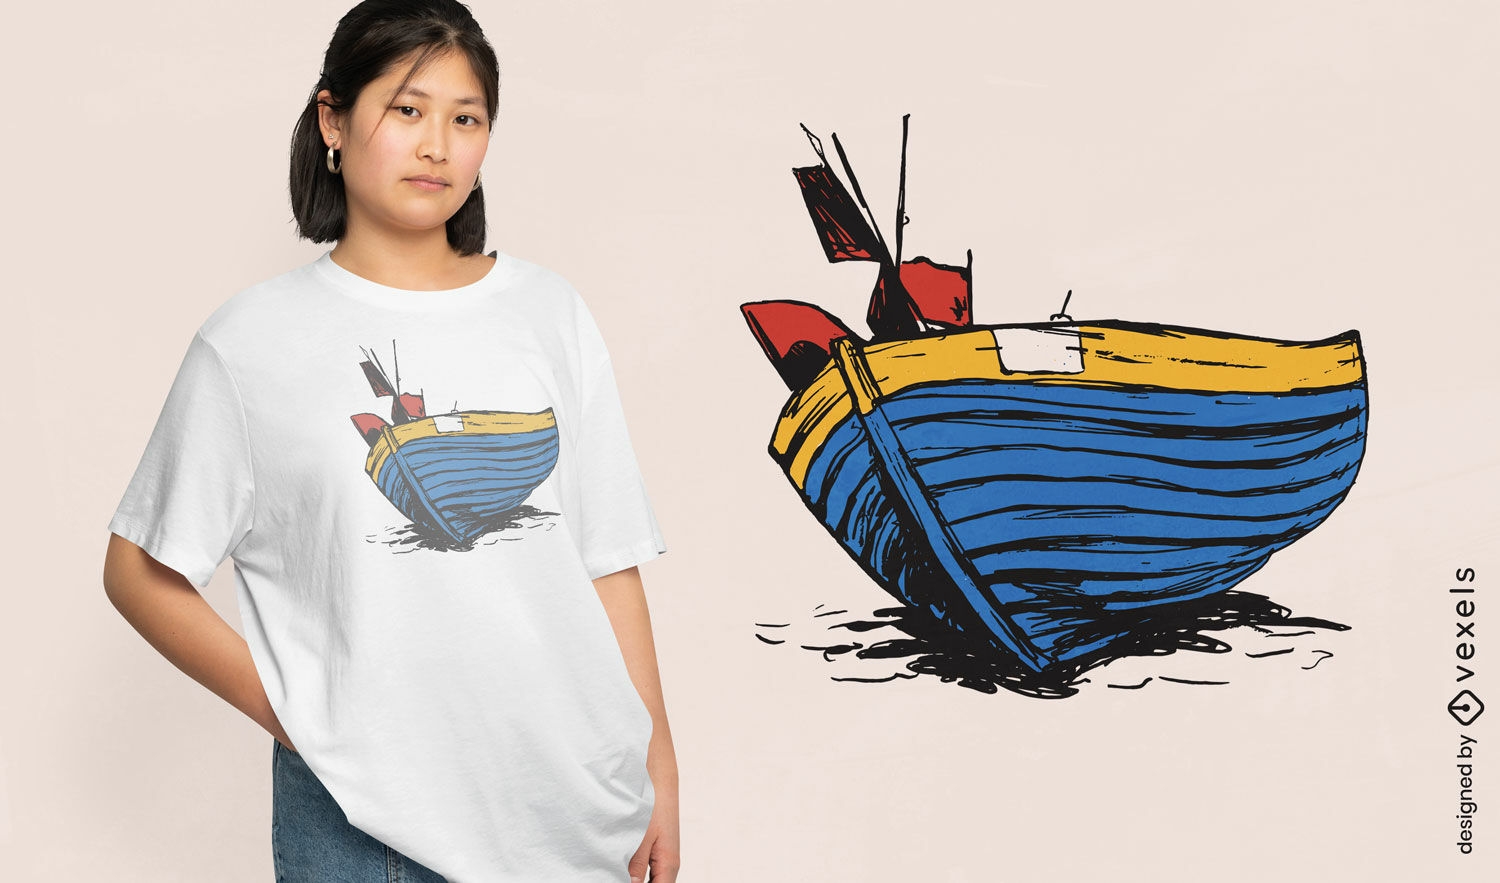 Dise?o de camiseta de barco pesquero azul.